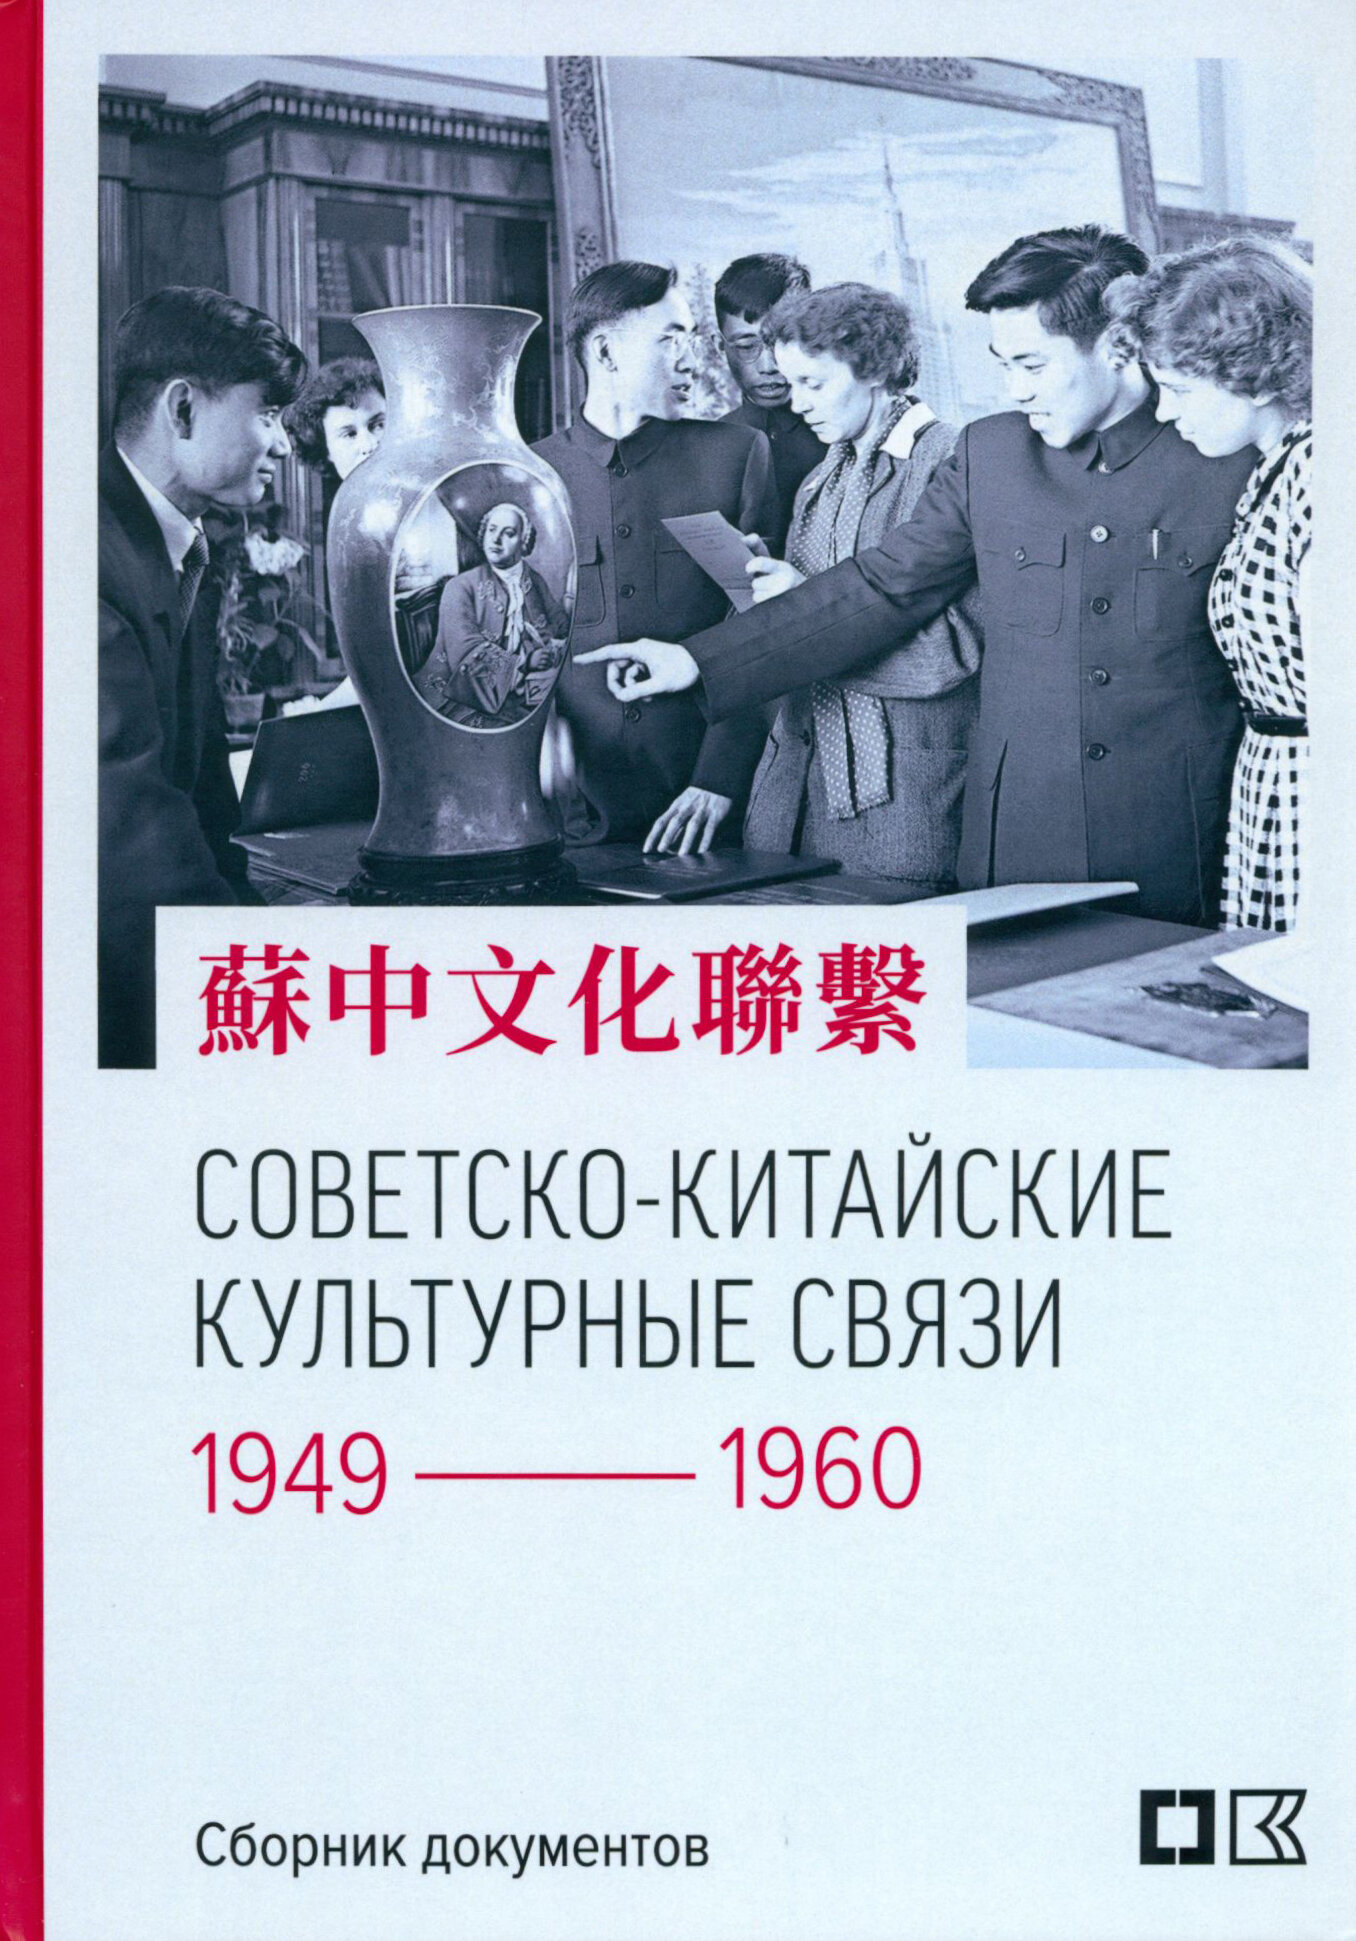 Советско-китайские культурные связи. 1949-1960 гг. - фото №2